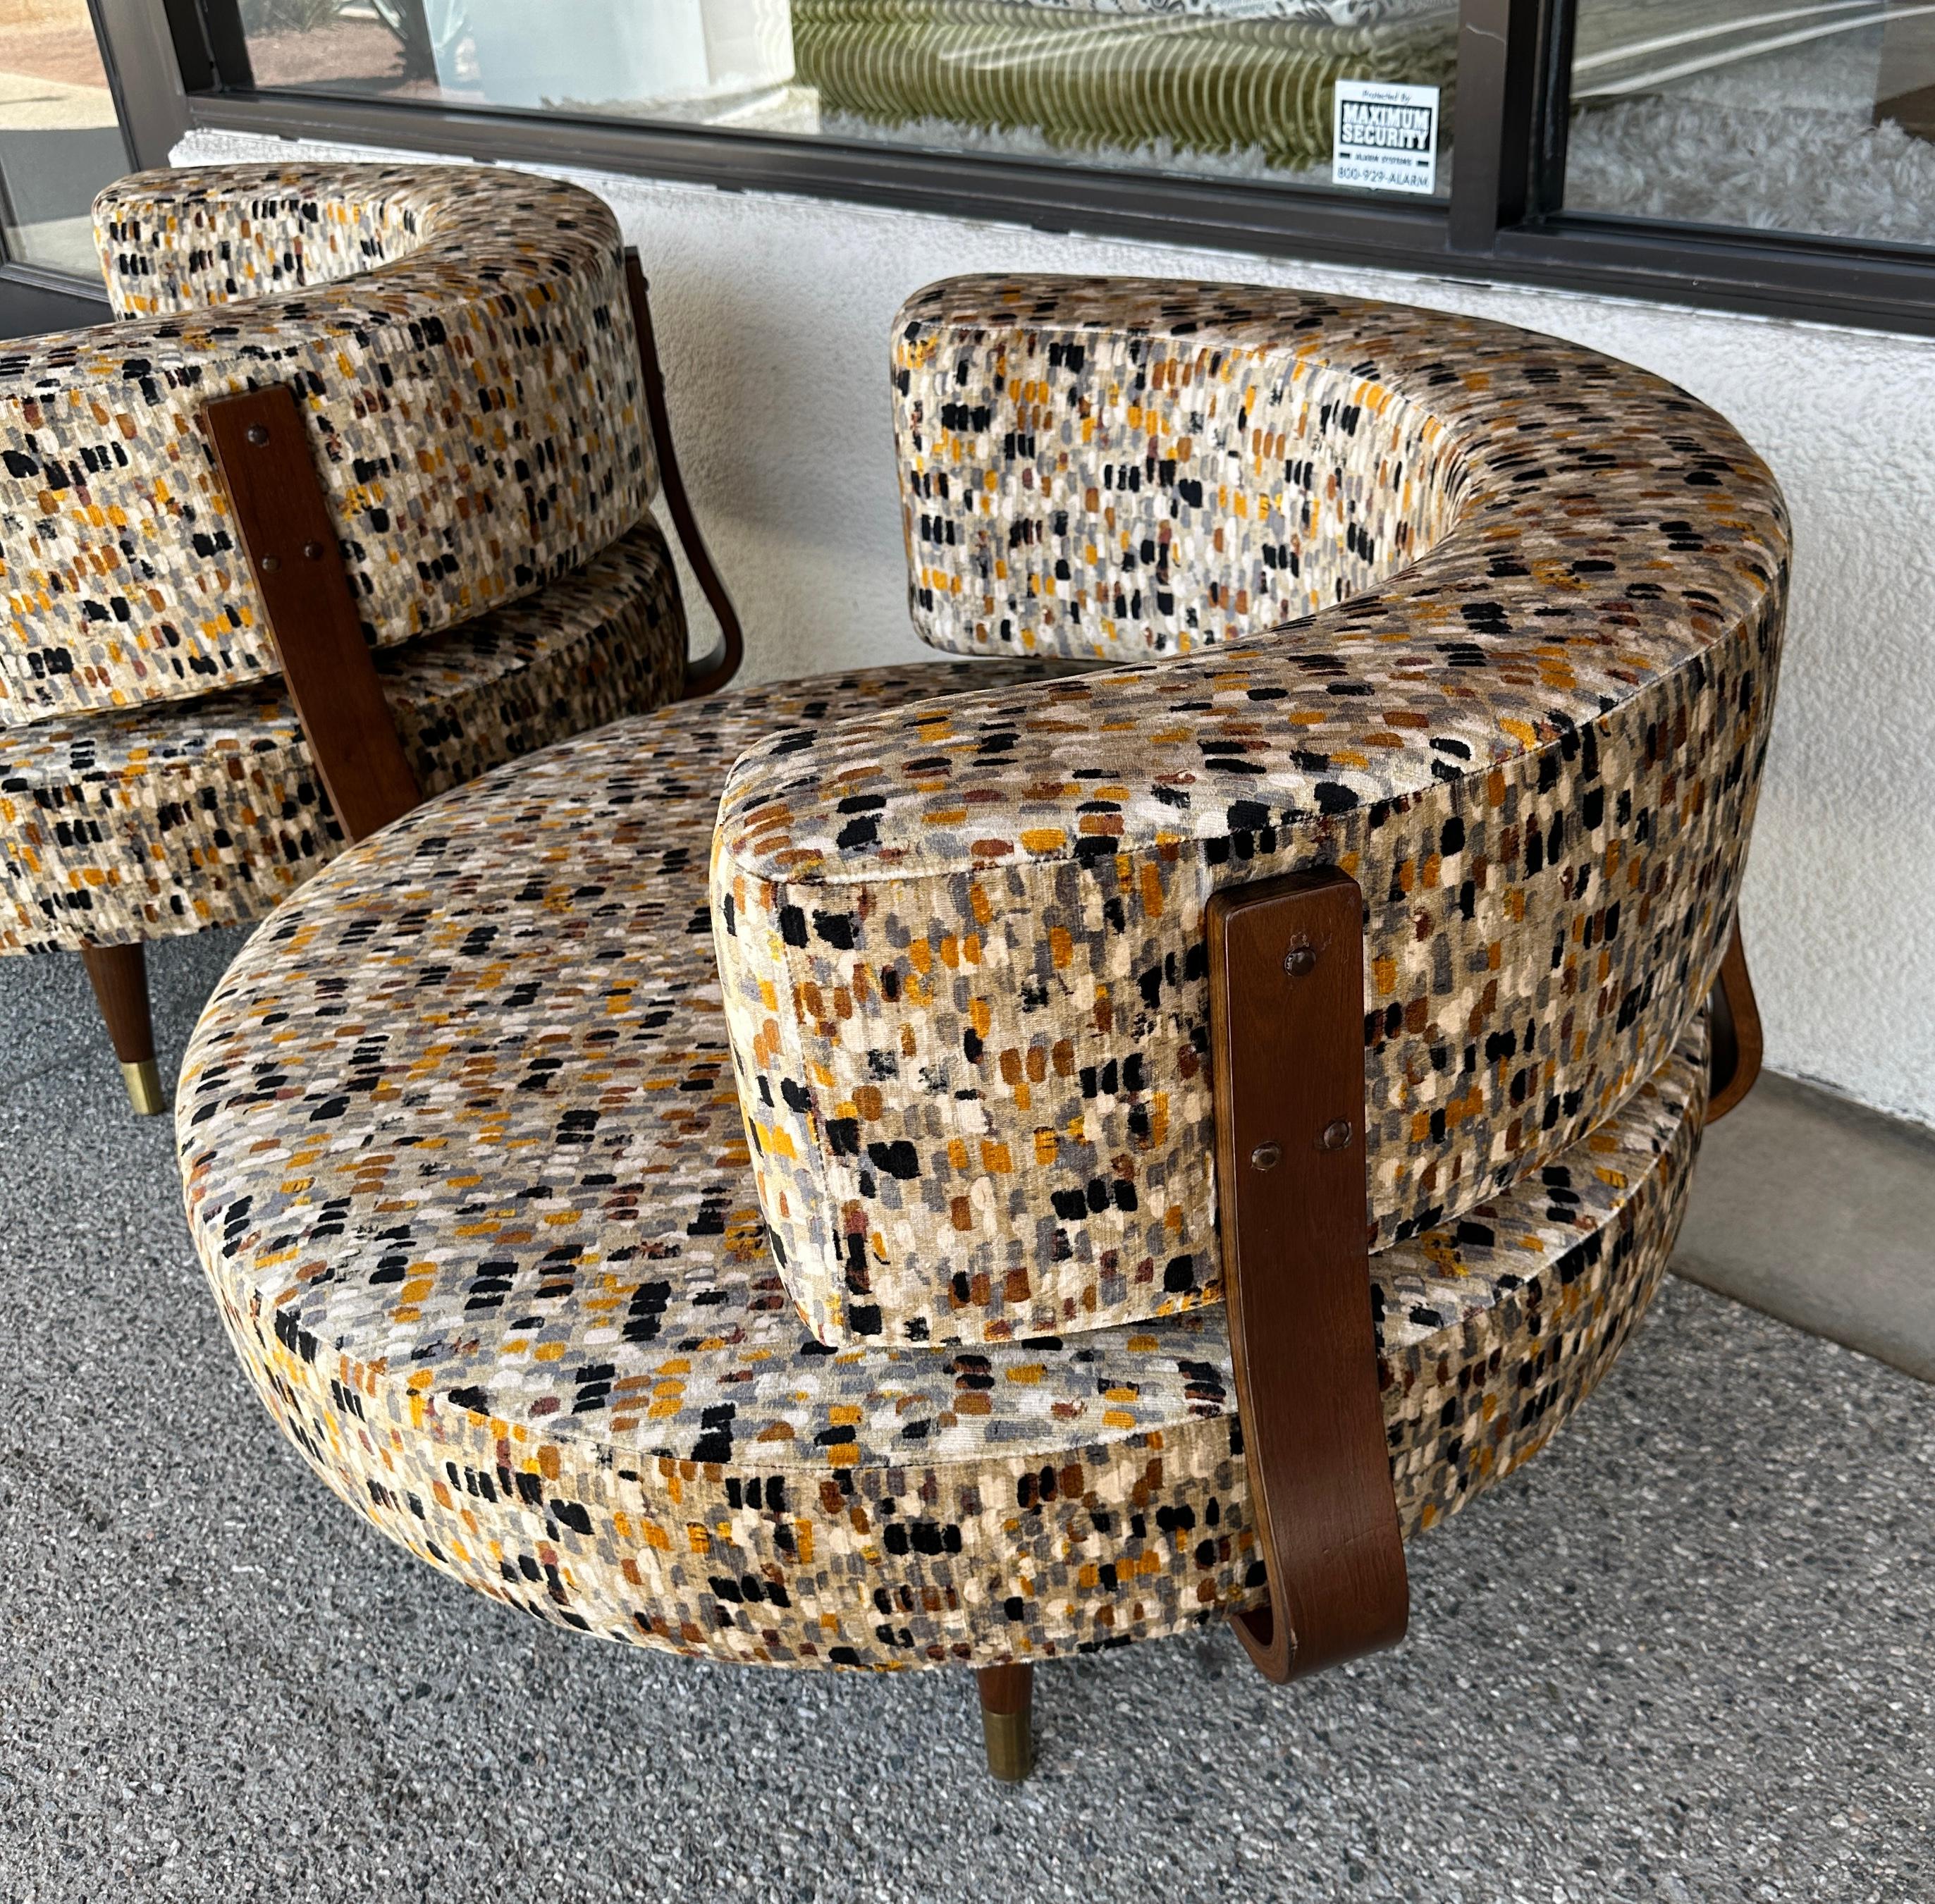 Une fabuleuse paire de chaises pivotantes rondes surdimensionnées d'Adrian Calle, refaites dans un magnifique tissu de velours de coton imprimé de Romo appelé Murano Anise. Il s'agit d'un mélange de coton et de viscose. Les chaises sont entièrement